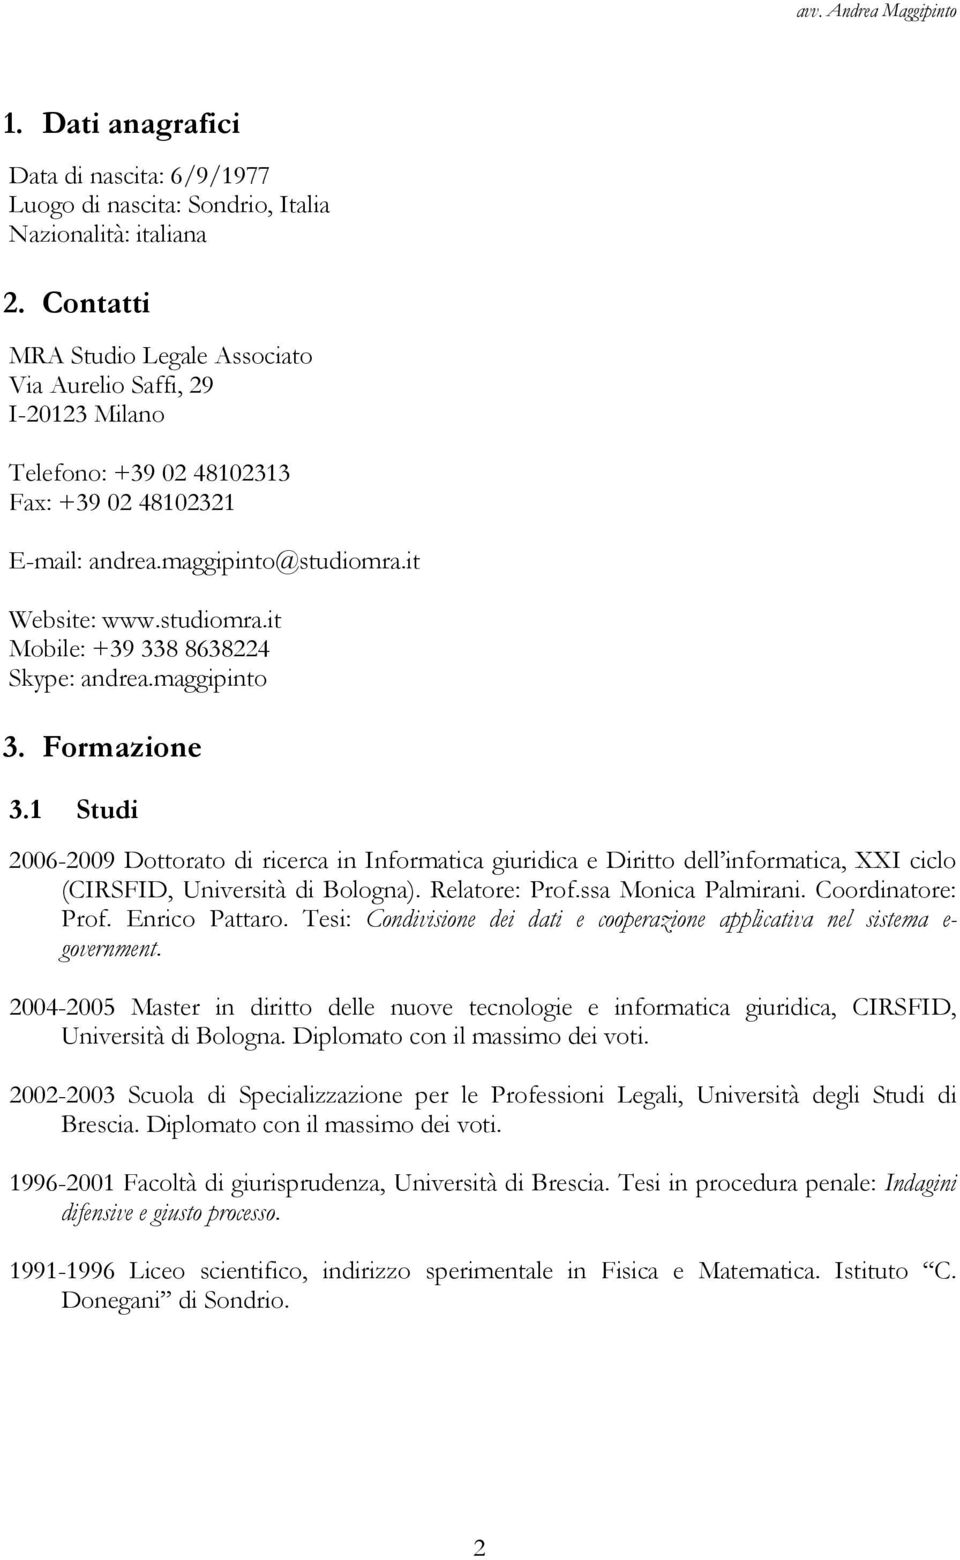 maggipinto 3. Formazione 3.1 Studi 2006-2009 Dottorato di ricerca in Informatica giuridica e Diritto dell informatica, XXI ciclo (CIRSFID, Università di Bologna). Relatore: Prof.ssa Monica Palmirani.